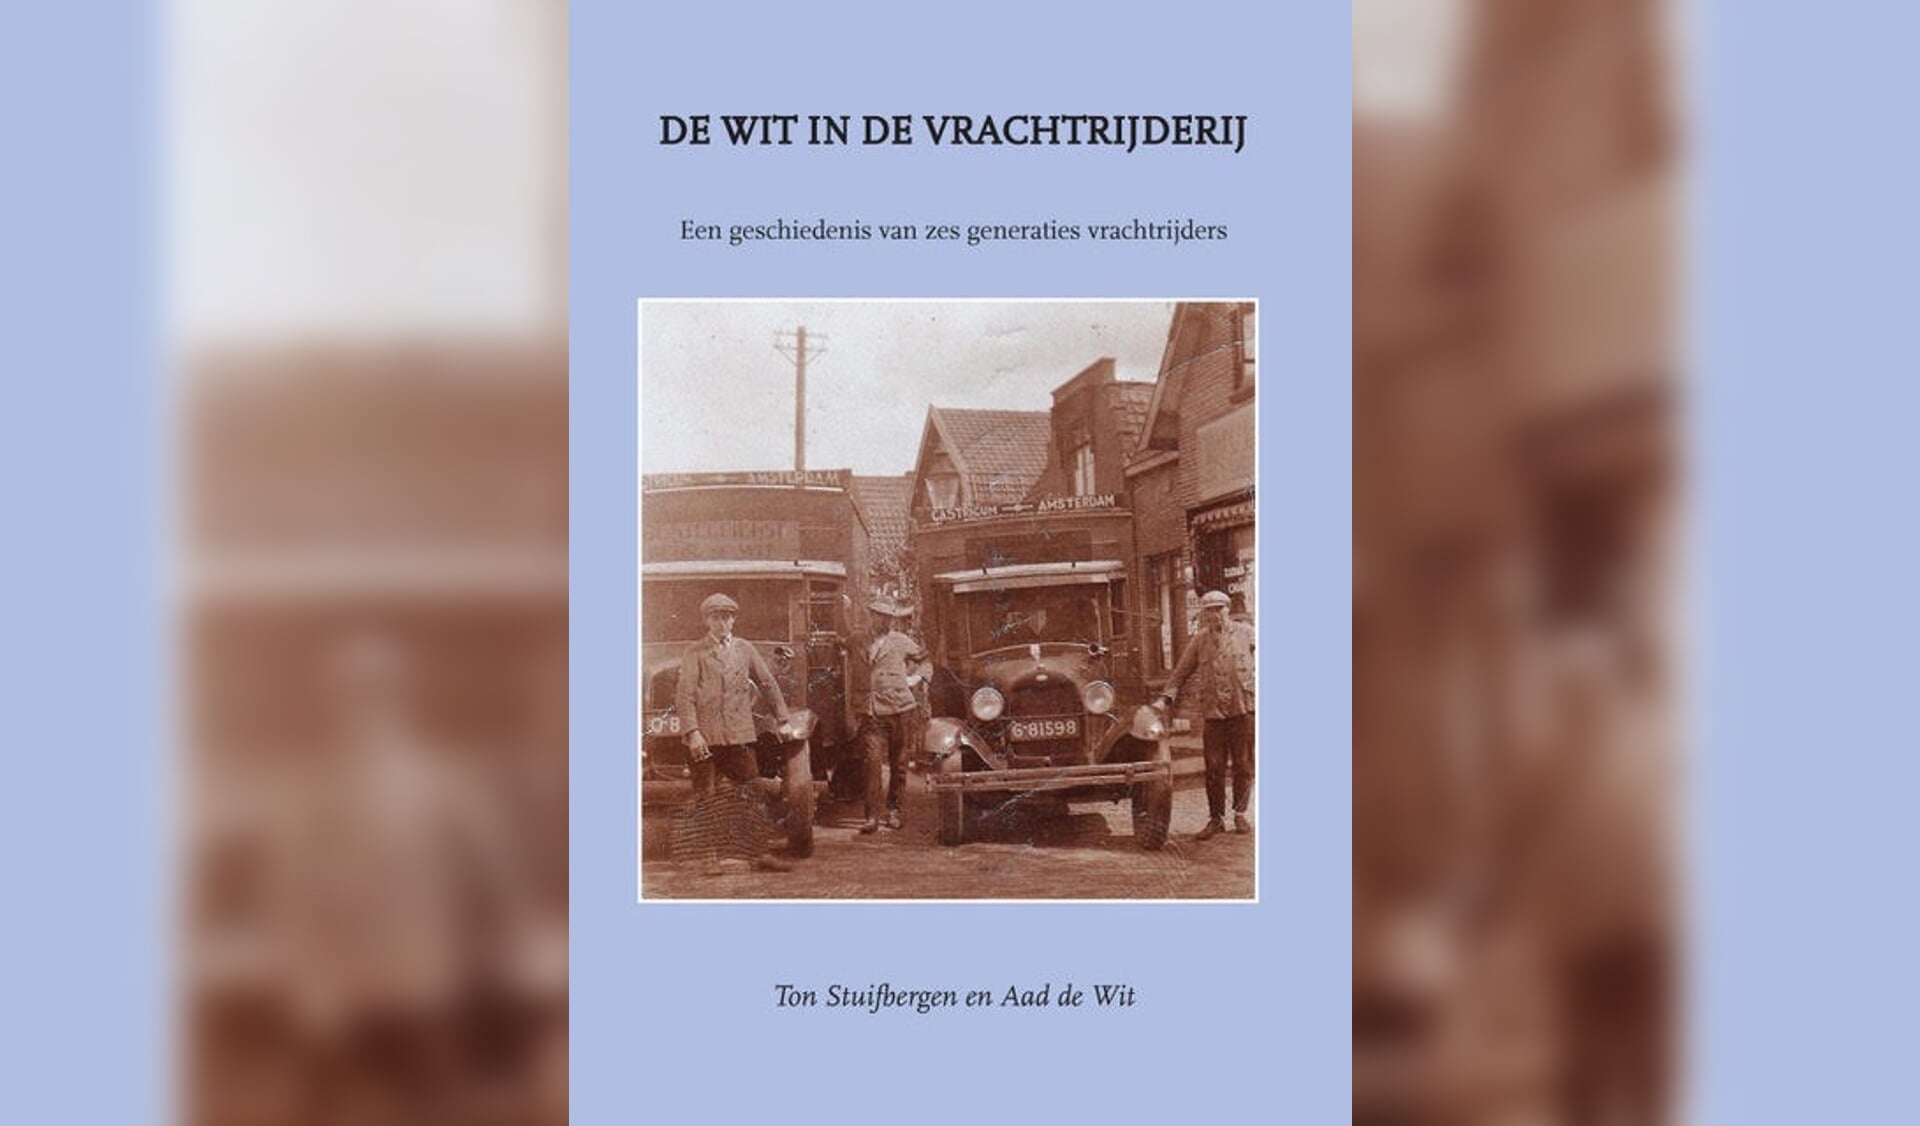 Boek De Wit in de vrachtrijderij: een geschiedenis van 6 generaties vrachtrijders.